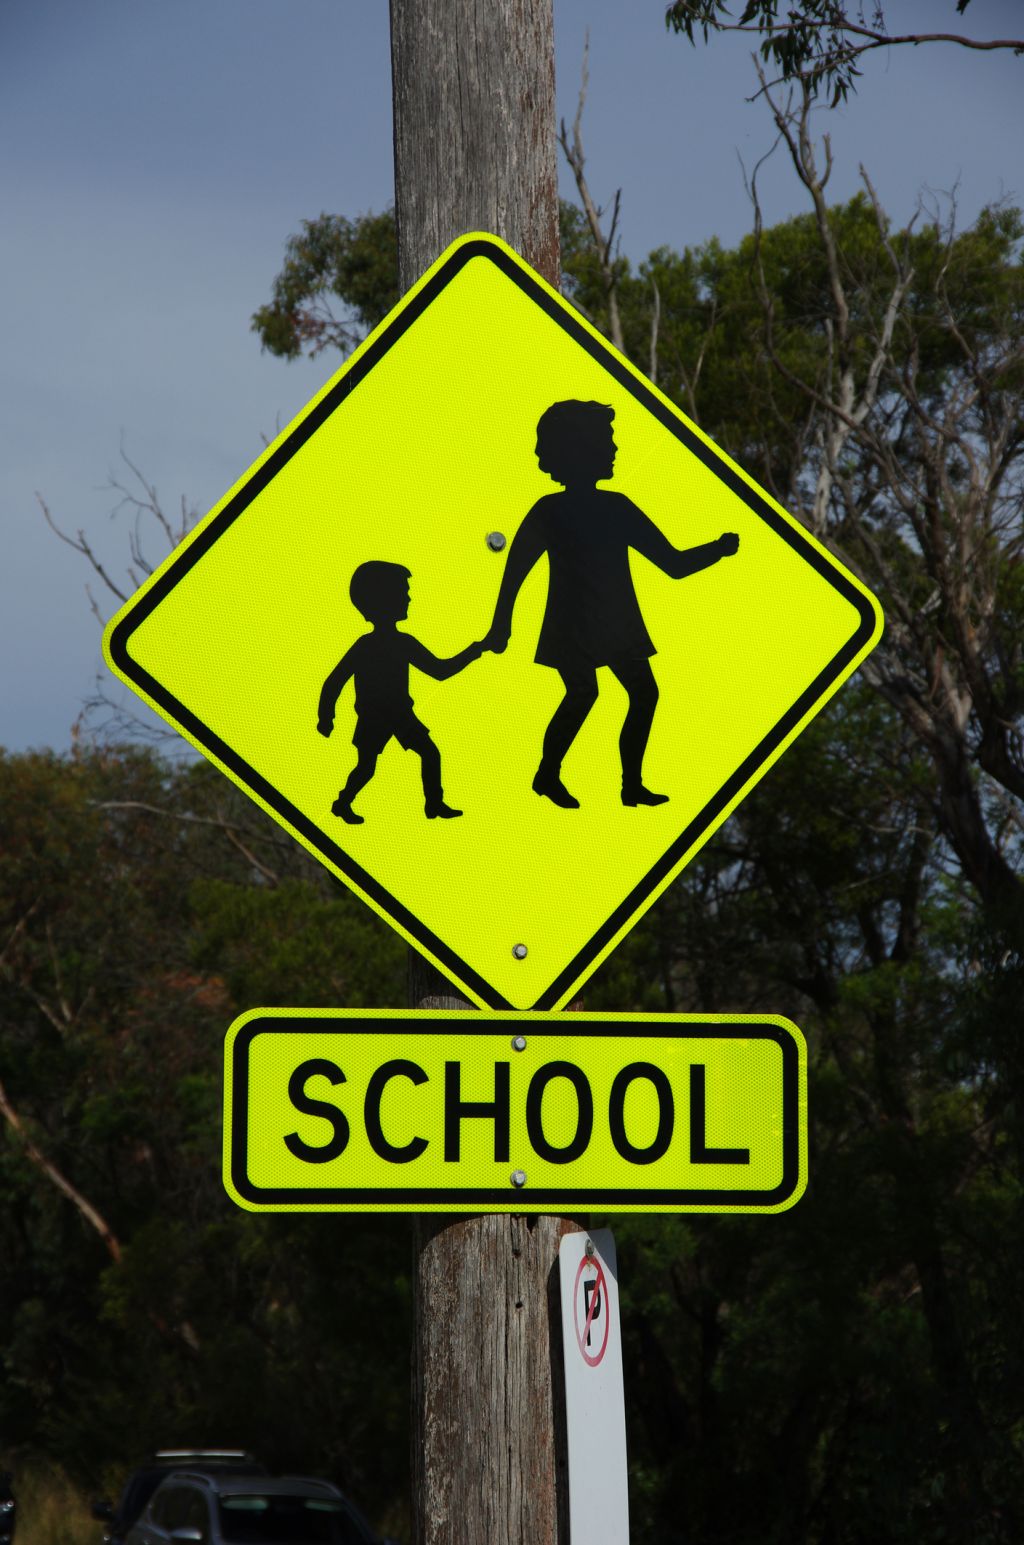 School crossing road warning sign